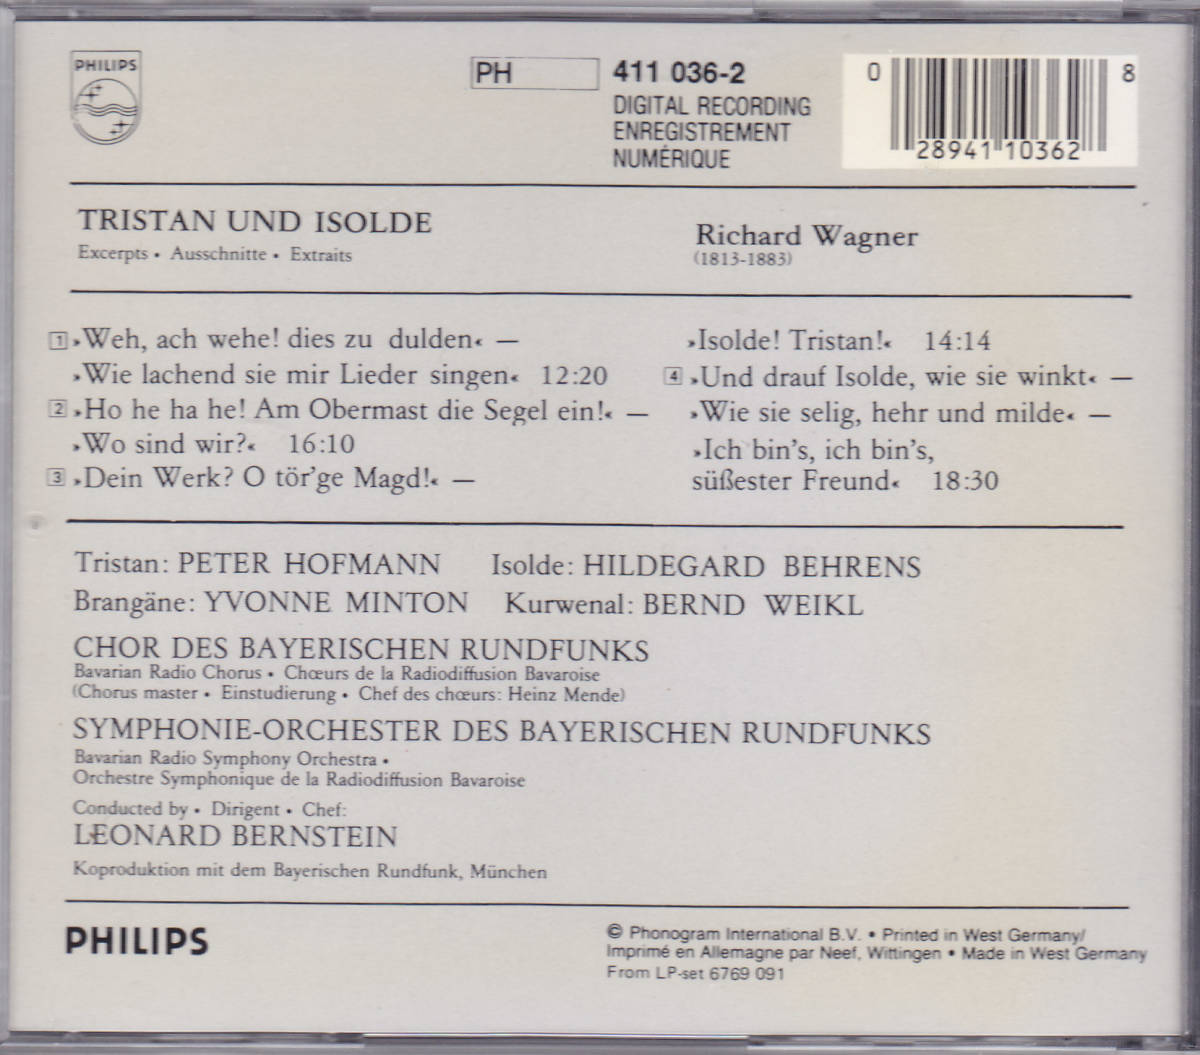 CD バーンスタイン / ワーグナー : トリスタンとイゾルデ ハイライト - 西独盤 PHILIPS 初期 青盤 411 036-2_画像2